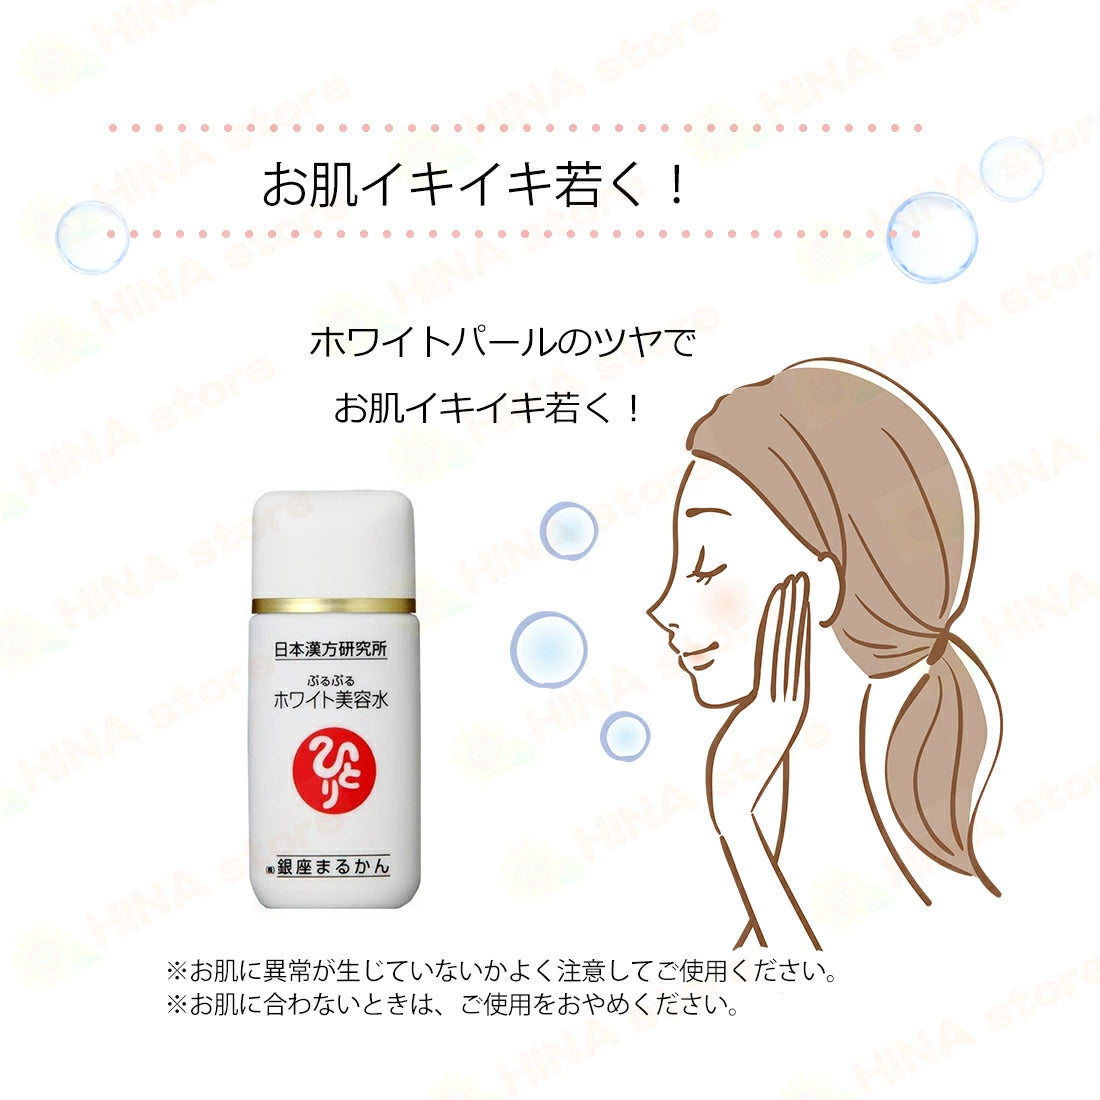 銀座まるかん 顔パワー ホワイト美容水 33ml - 基礎化粧品